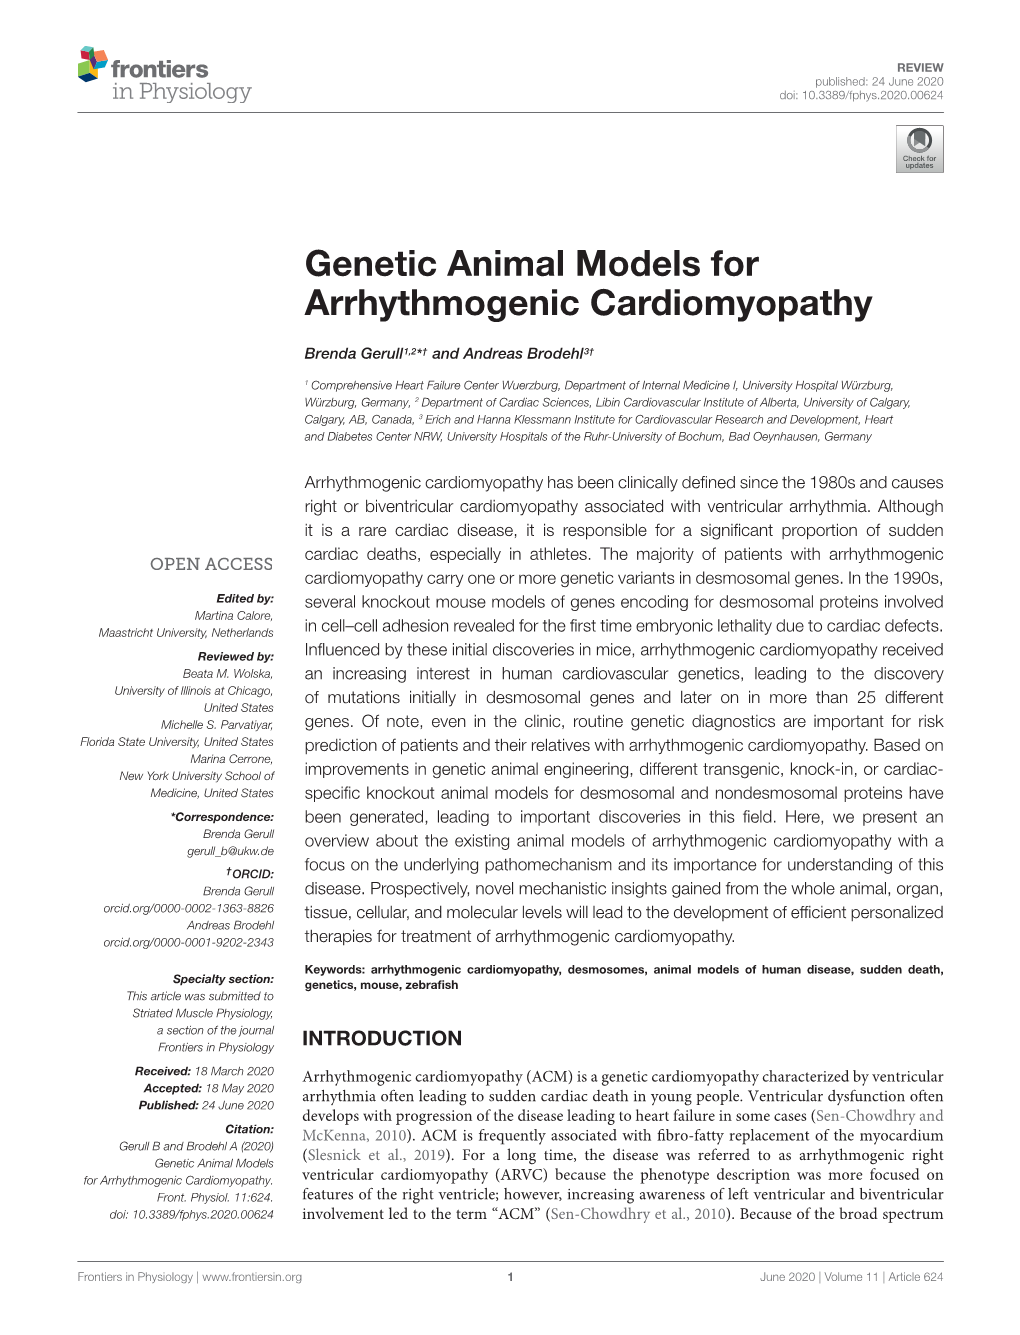 Genetic Animal Models for Arrhythmogenic Cardiomyopathy